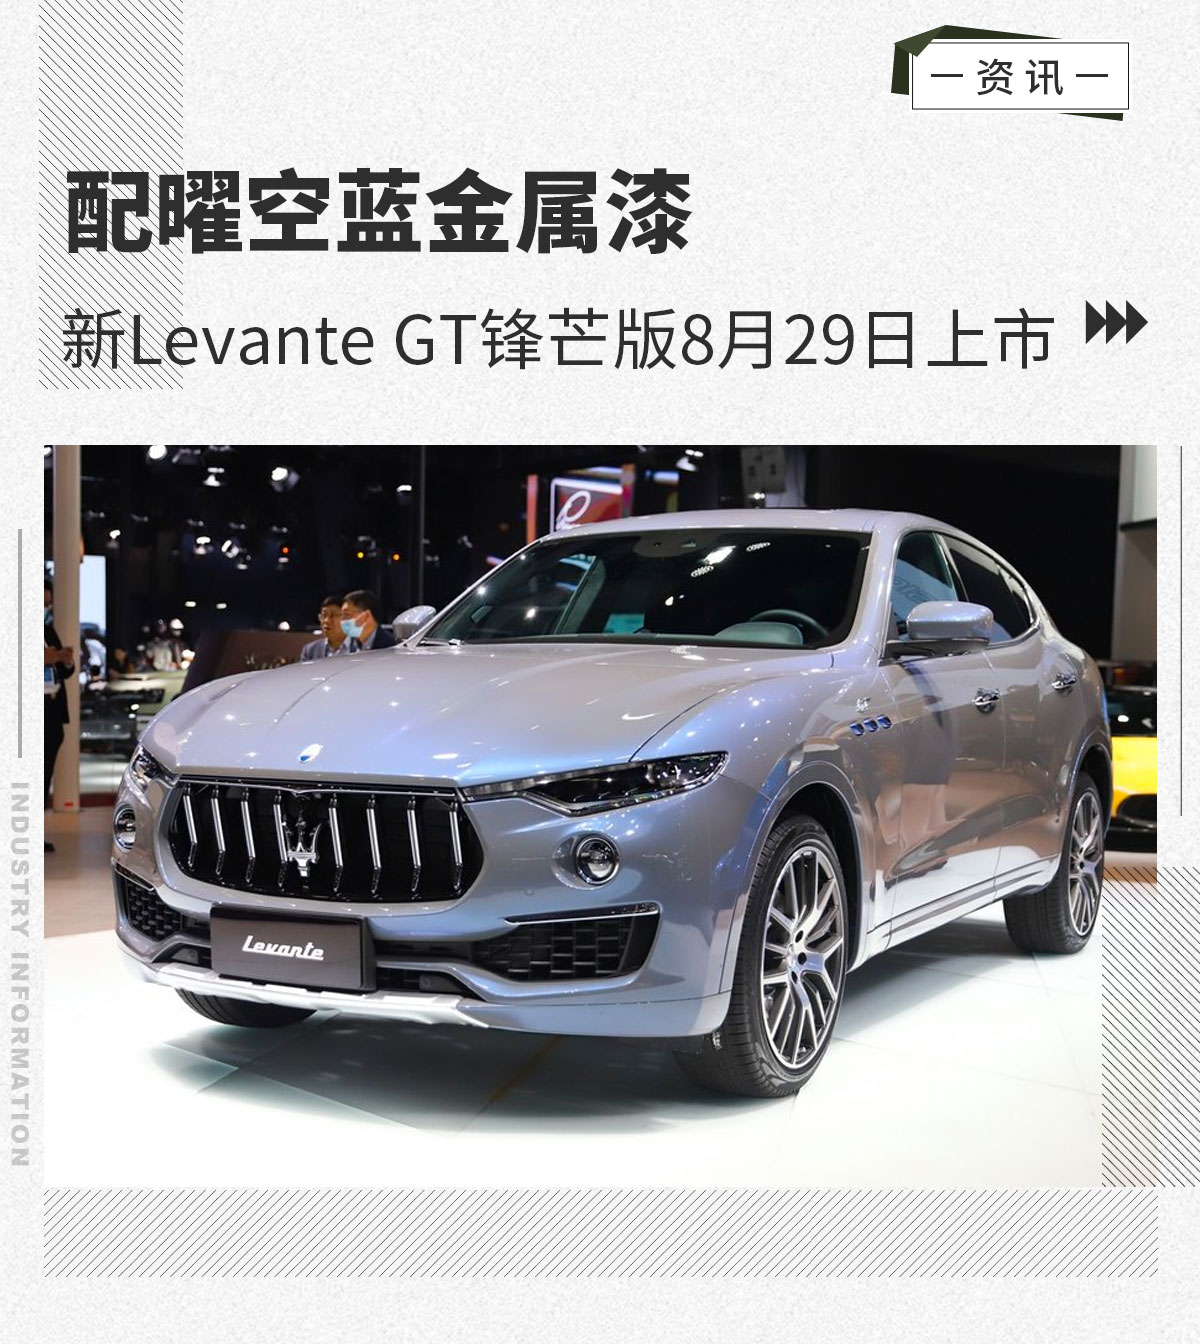 新Levante GT锋芒版8月29日上市 配曜空蓝金属漆